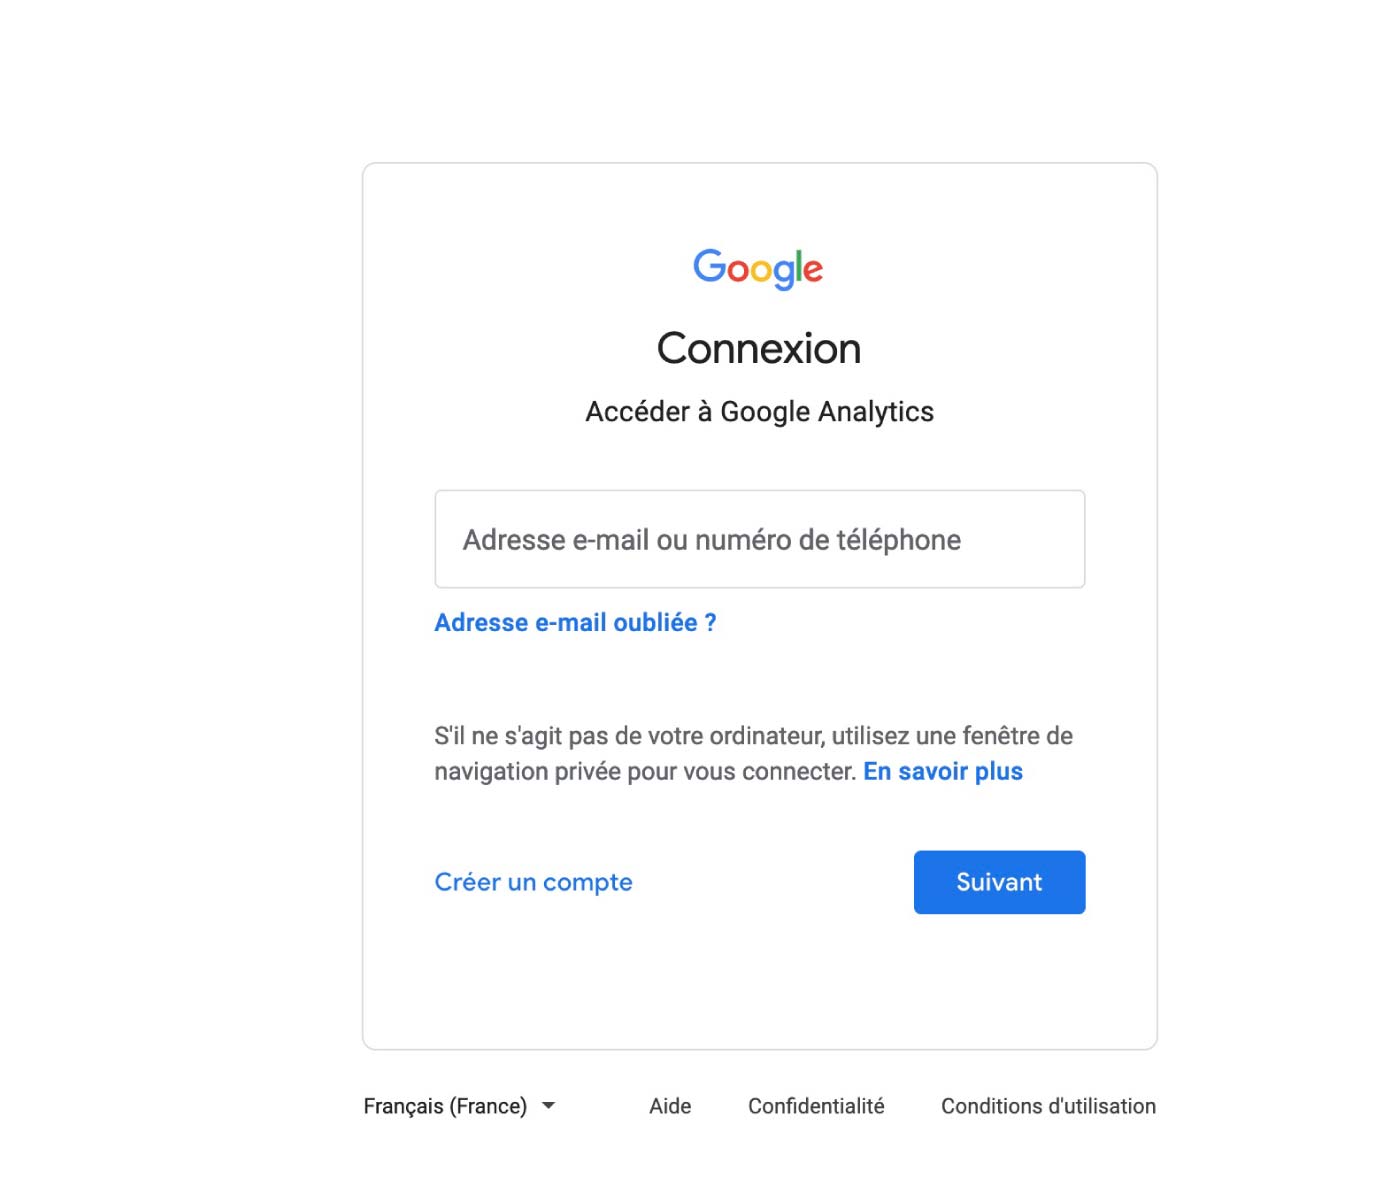 Connectez-vous à votre compte Google Analytics 4 sur le lien https://analytics.google.com/analytics/web/.